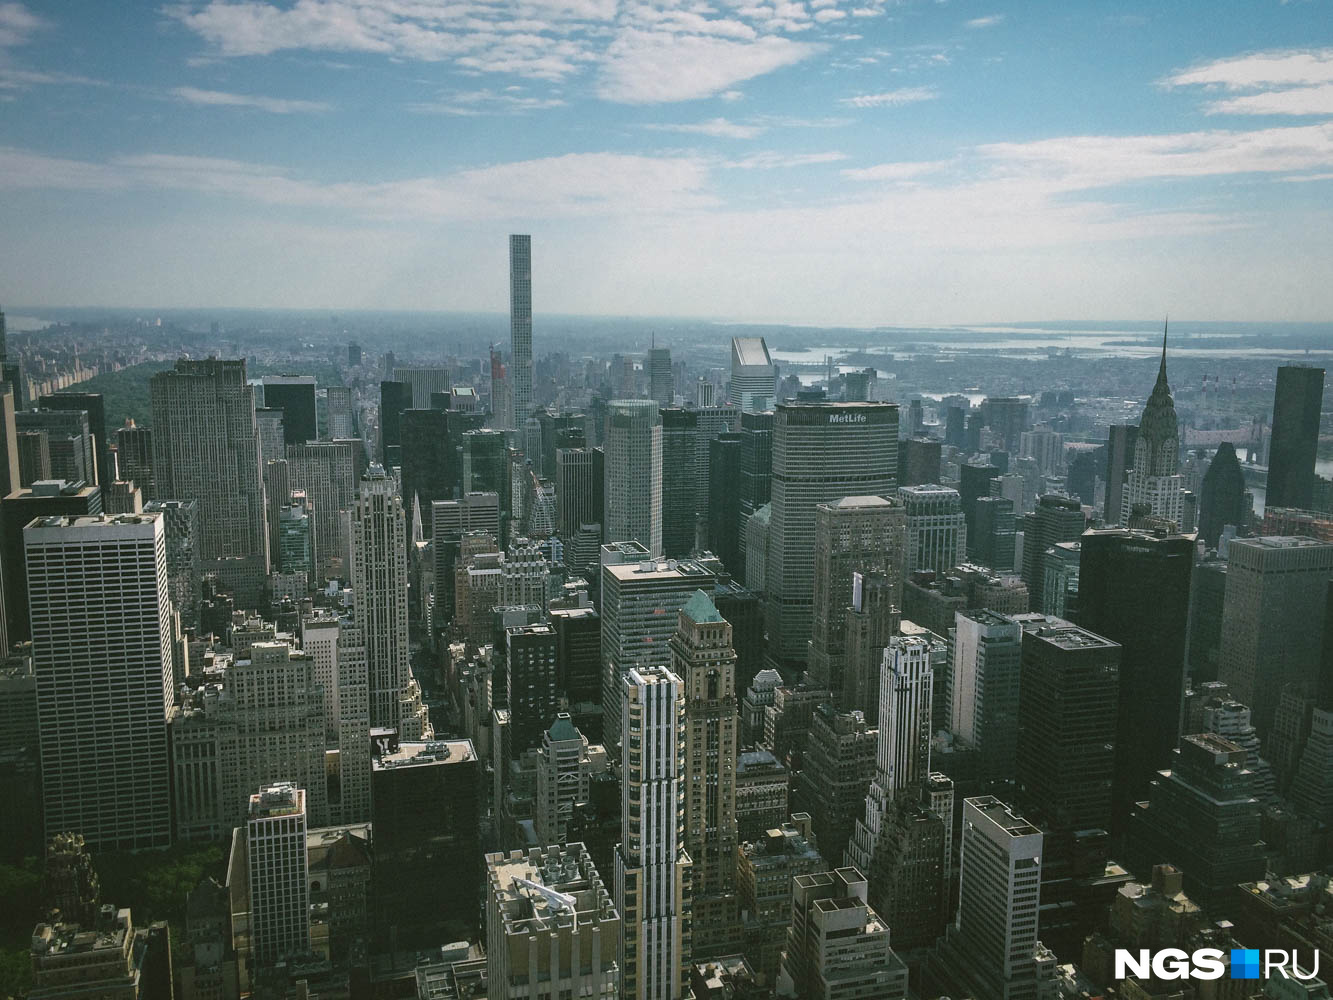 Манхэттен с 86-го этажа Empire State Building, вид на север. Справа виден Центральный парк, левее просматривается Пятая авеню — одна из главных улиц города, над горизонтом торчит дом по адресу 432 Park Avenue — самое высокое жилое здание в мире, справа находится шпиль Chrysler Building — ещё одного символа города